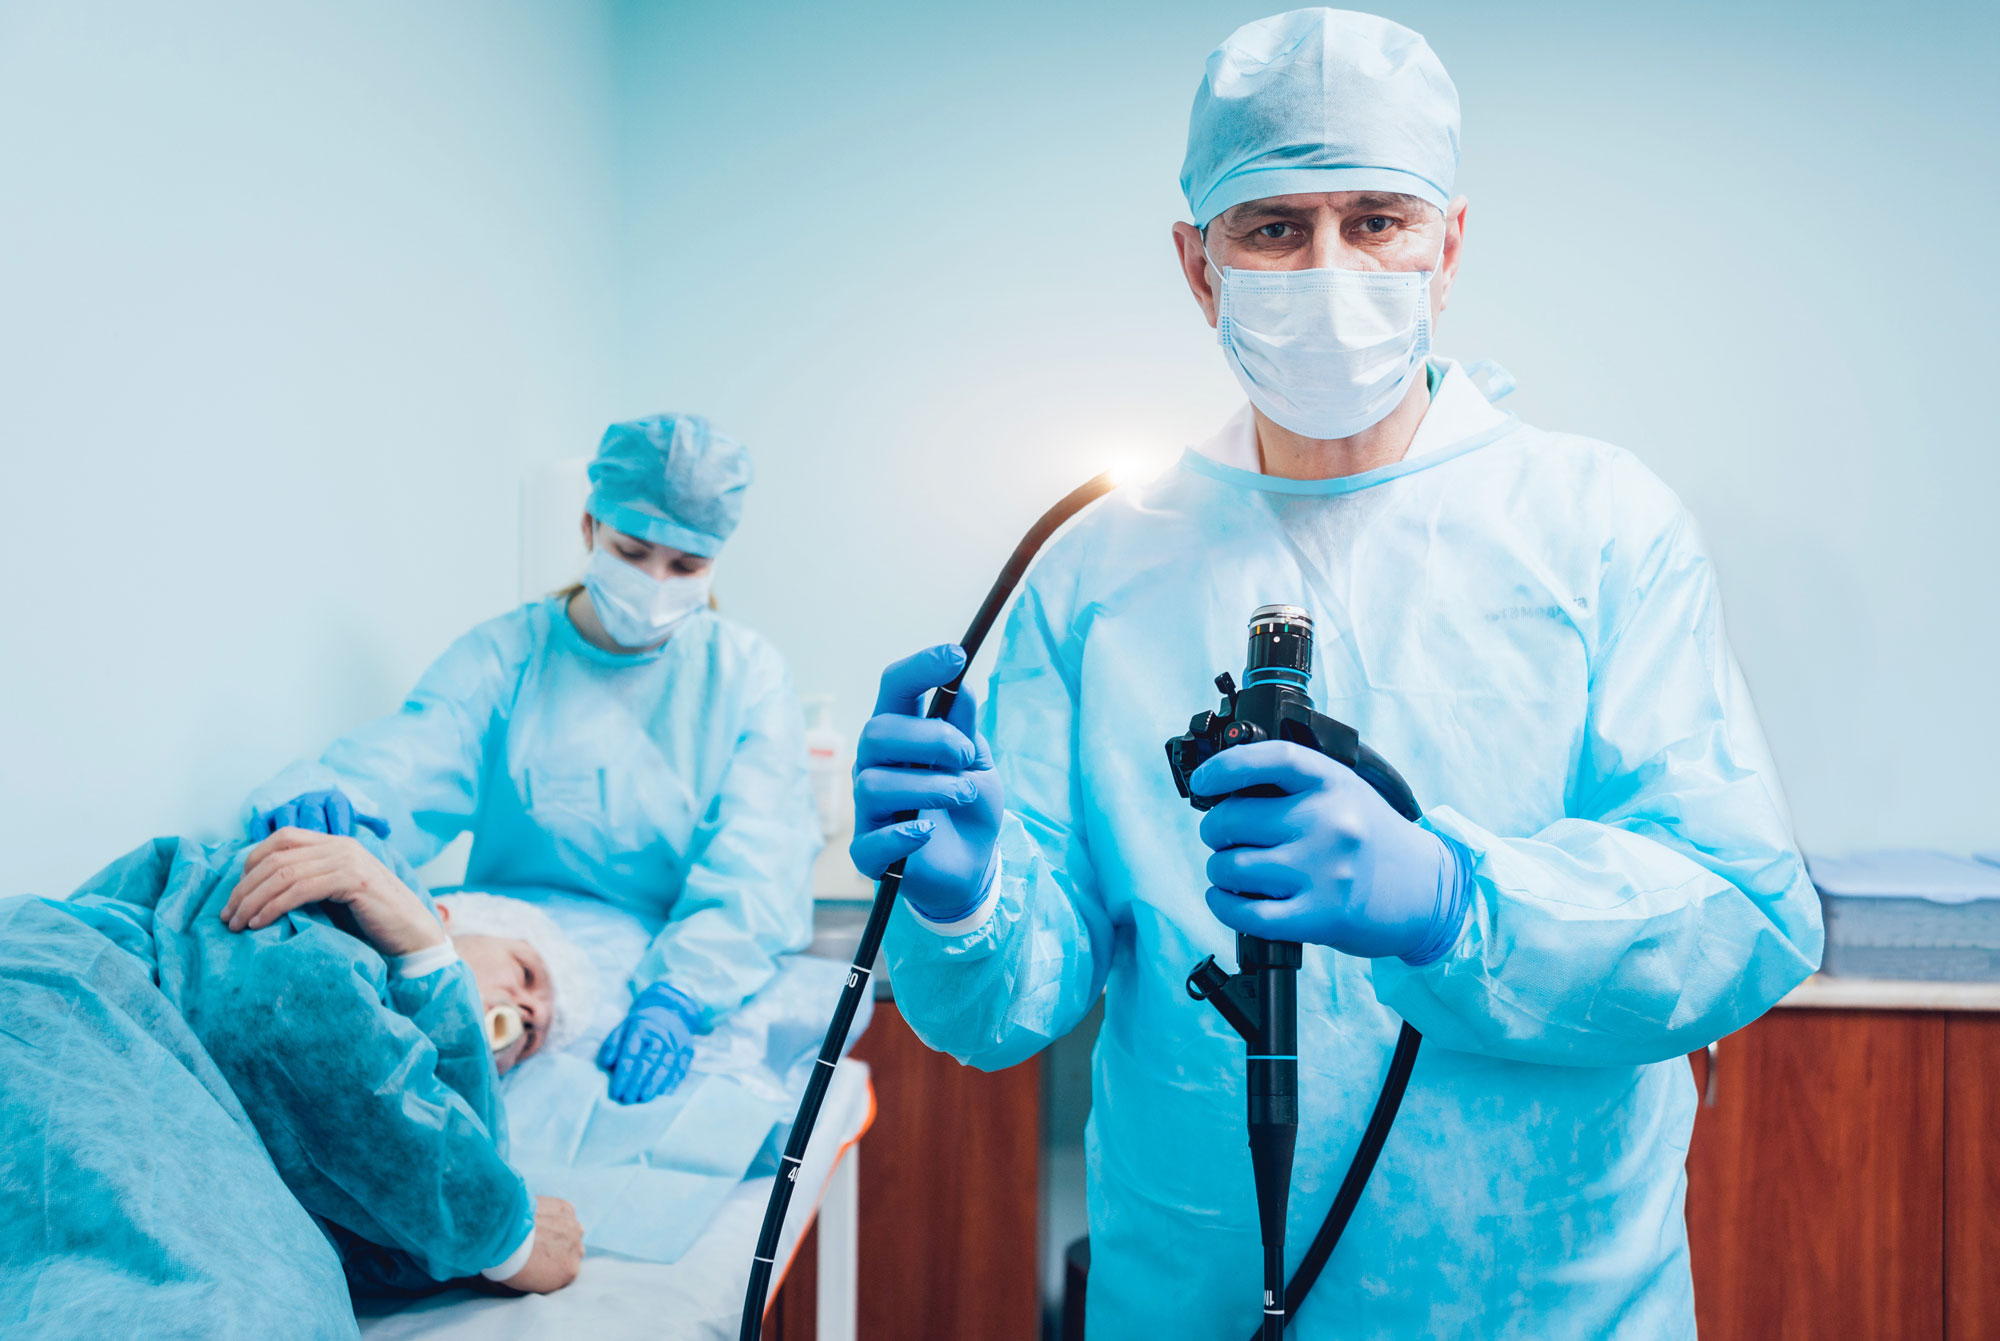 How should I prepare for an endoscopy?